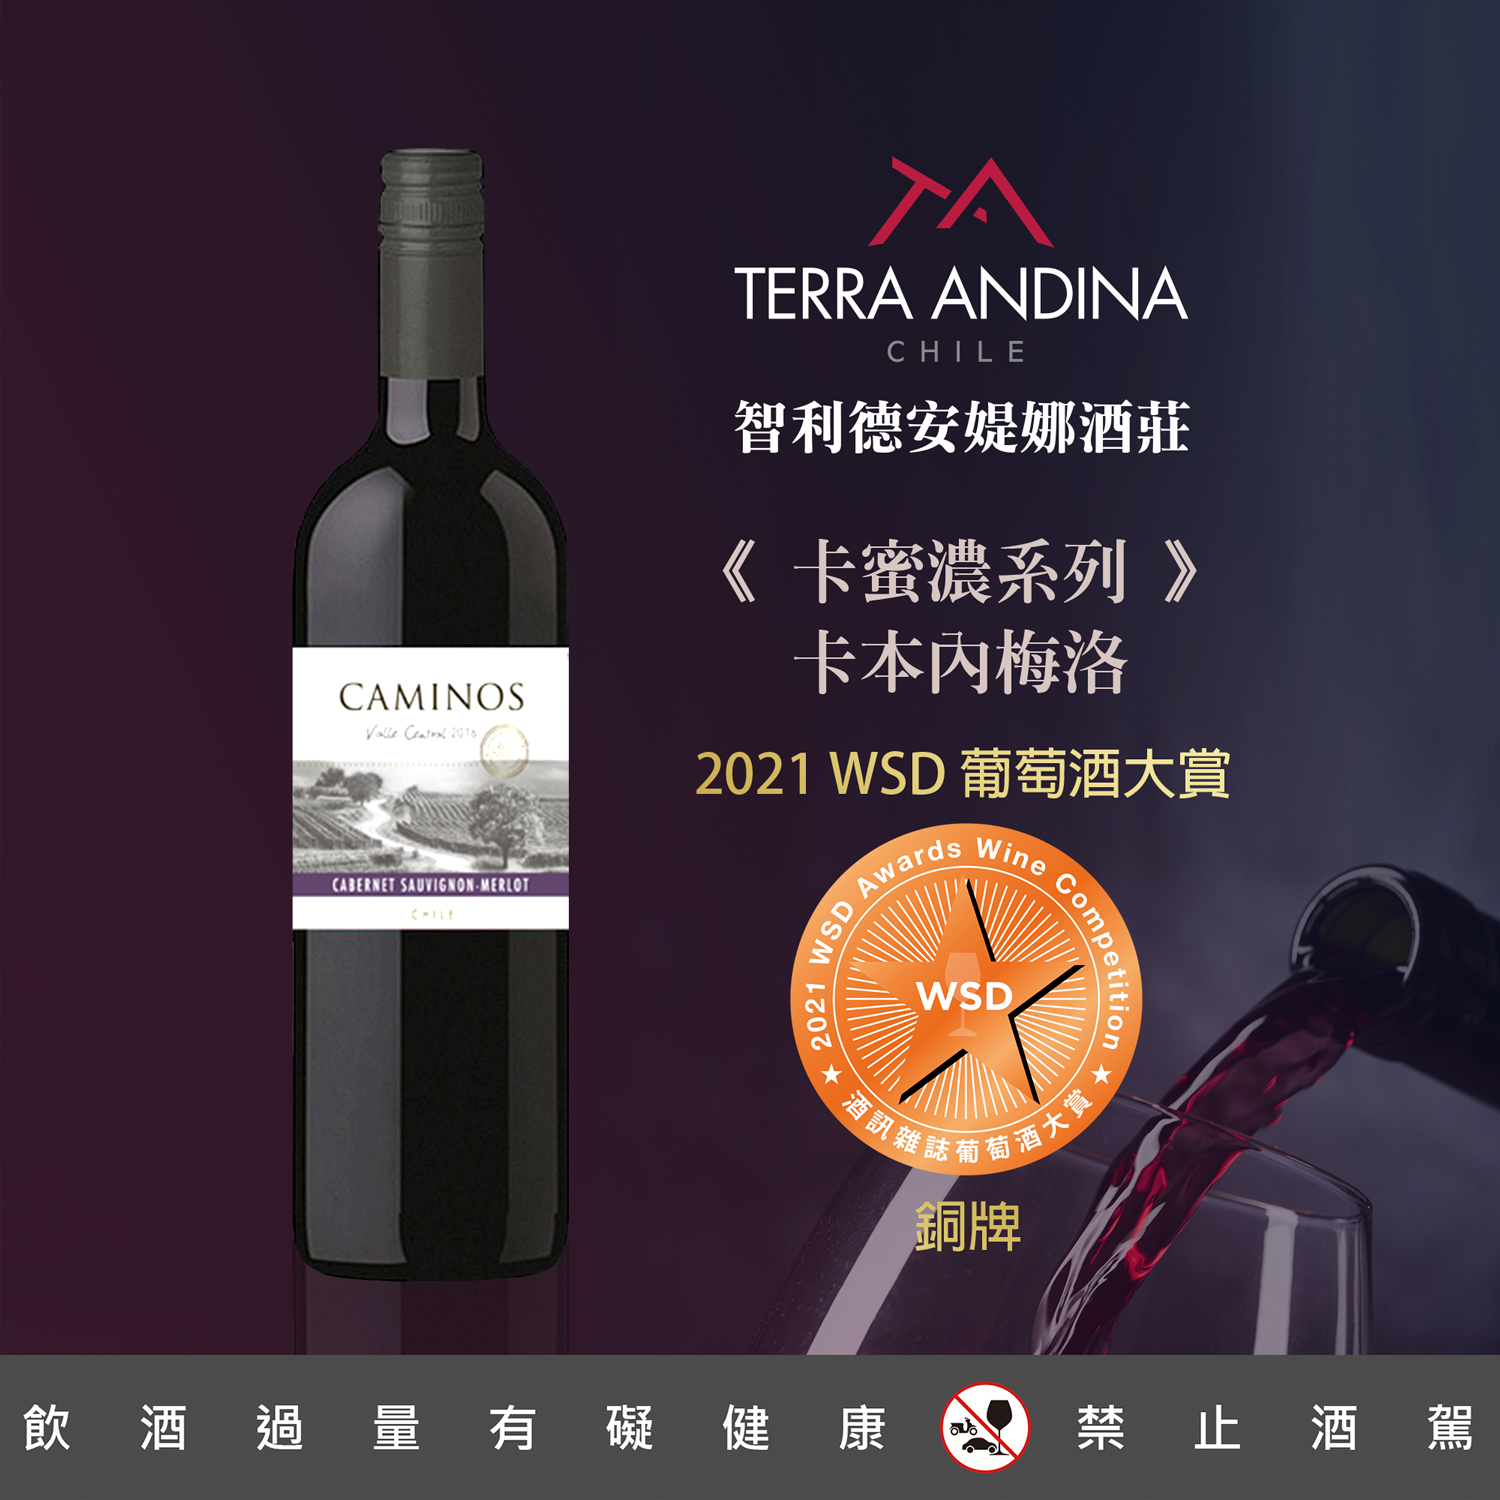 智利德安媞娜酒莊榮獲2021 WSD葡萄酒大賞銅牌